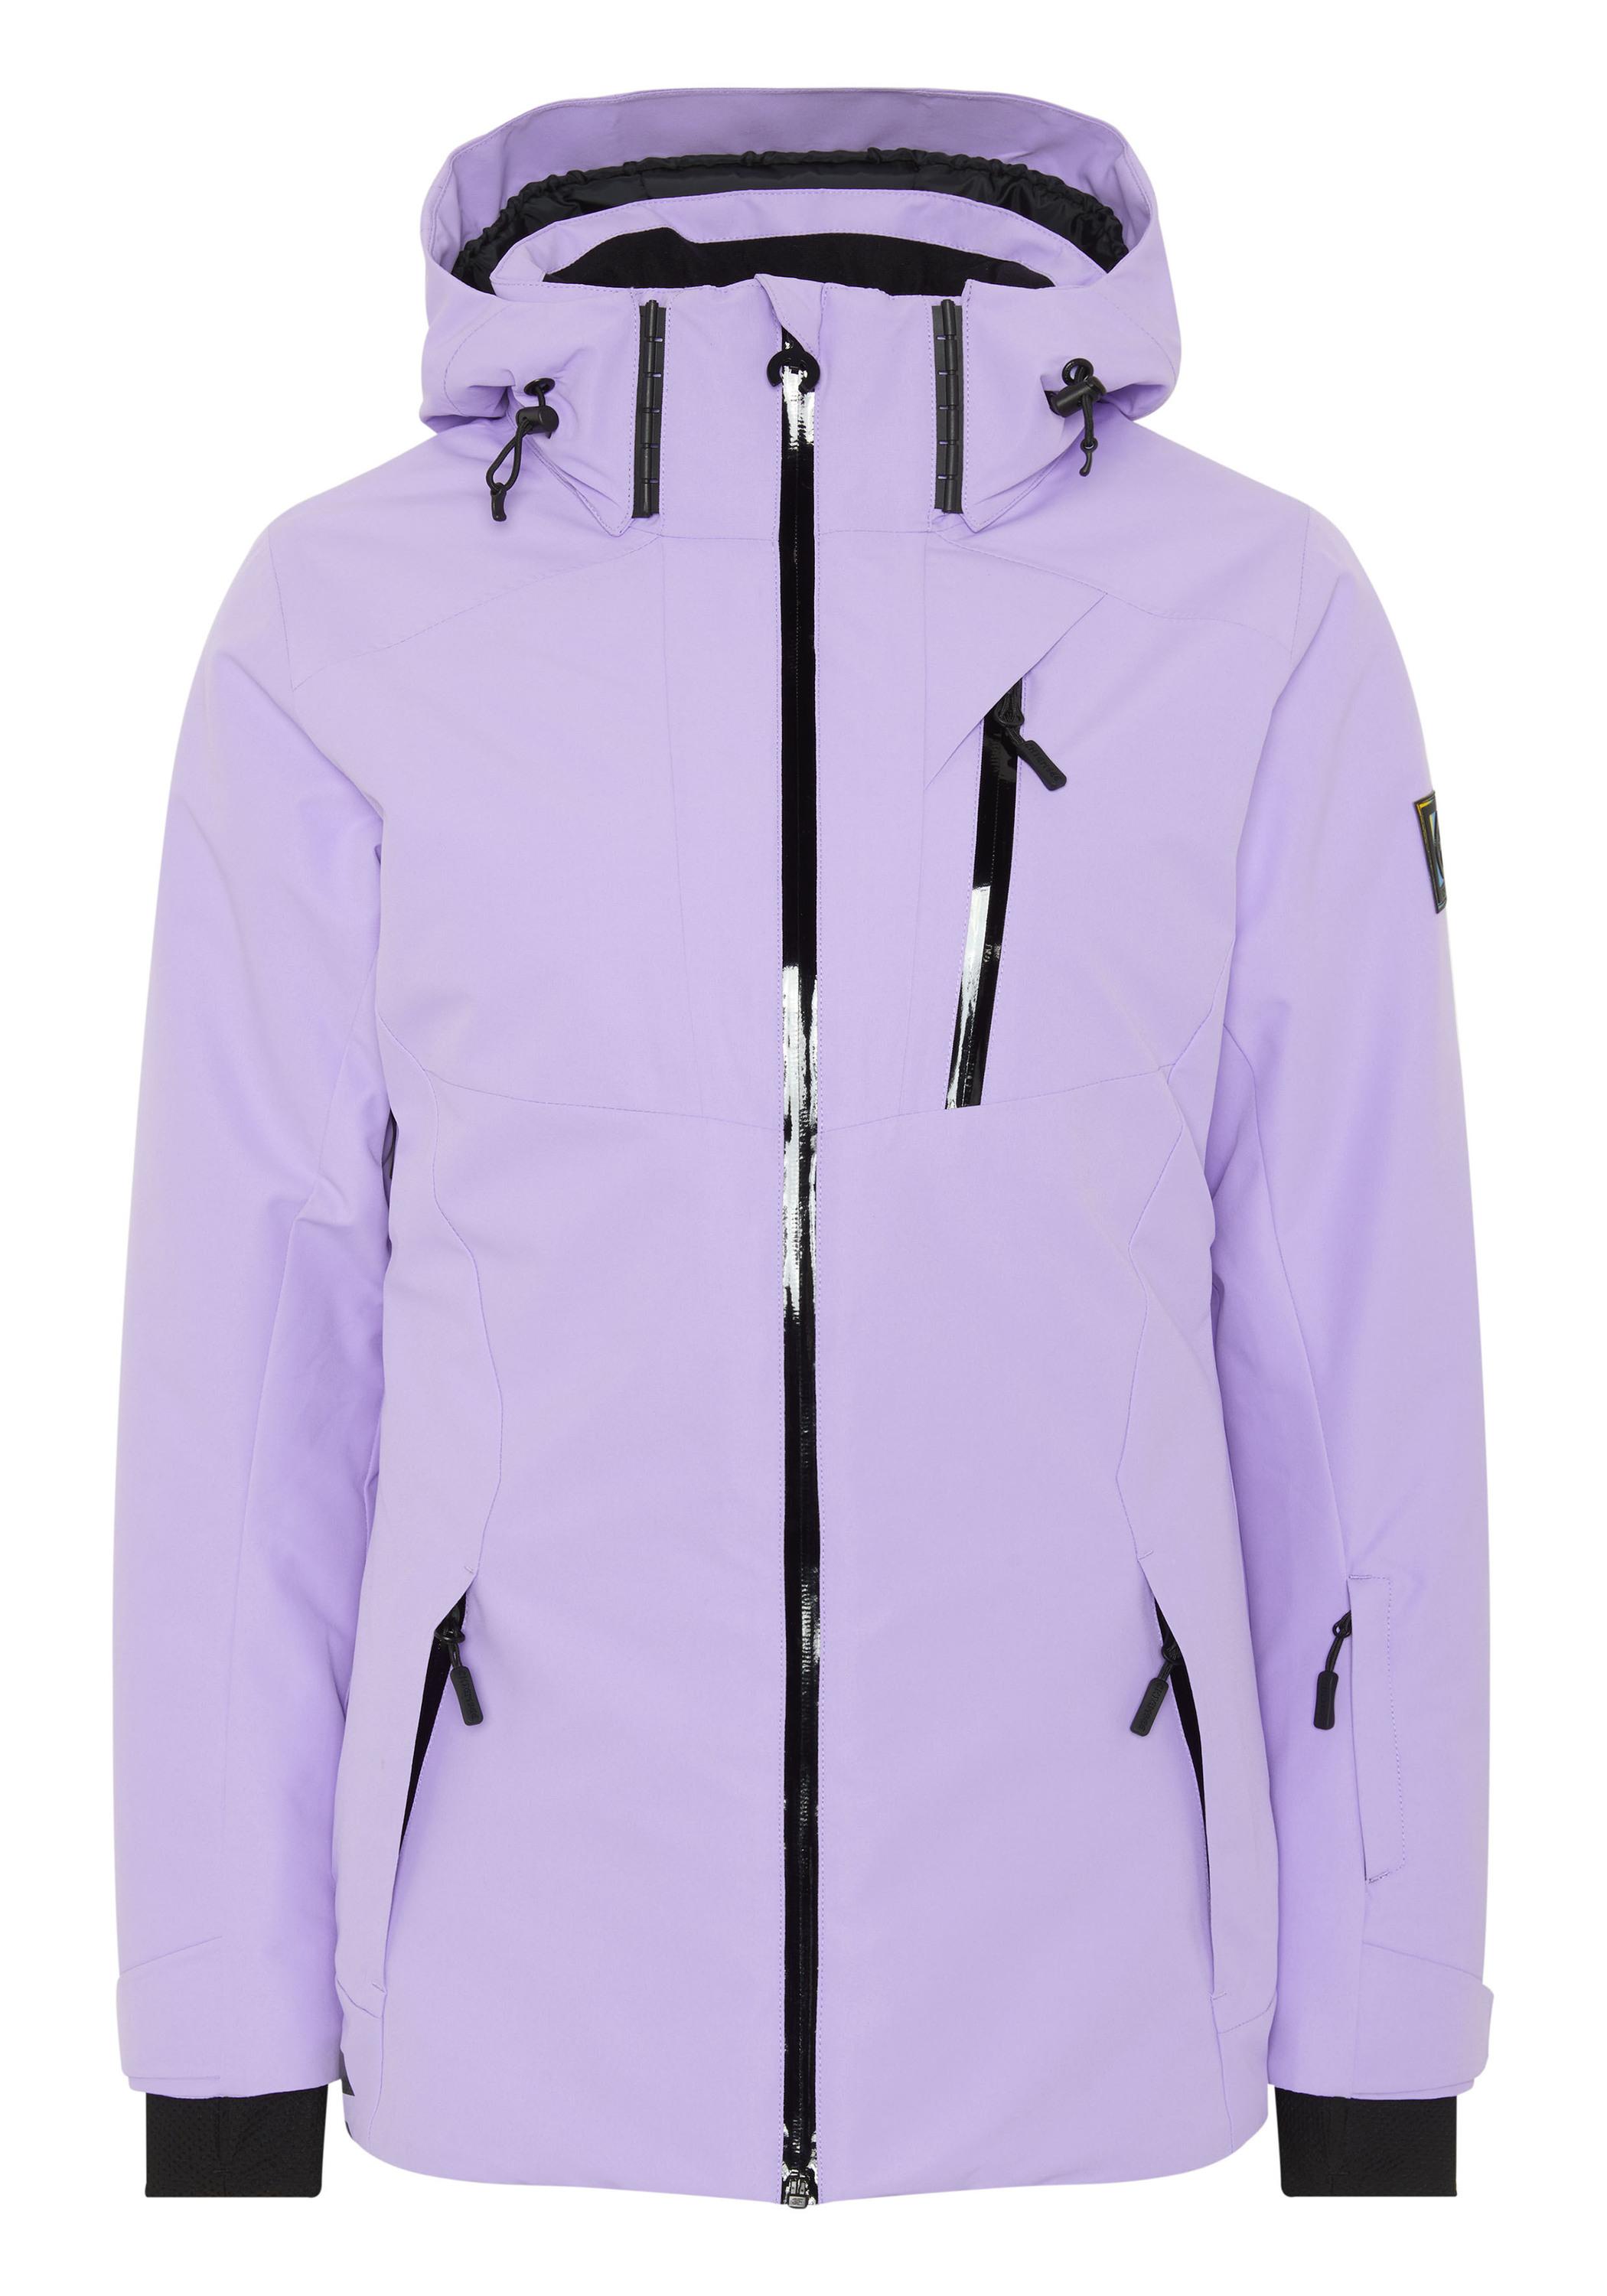 Chiemsee Skijacke Skijacke Damen Online SportScheck Purple von 15-3716 Rose kaufen Shop im